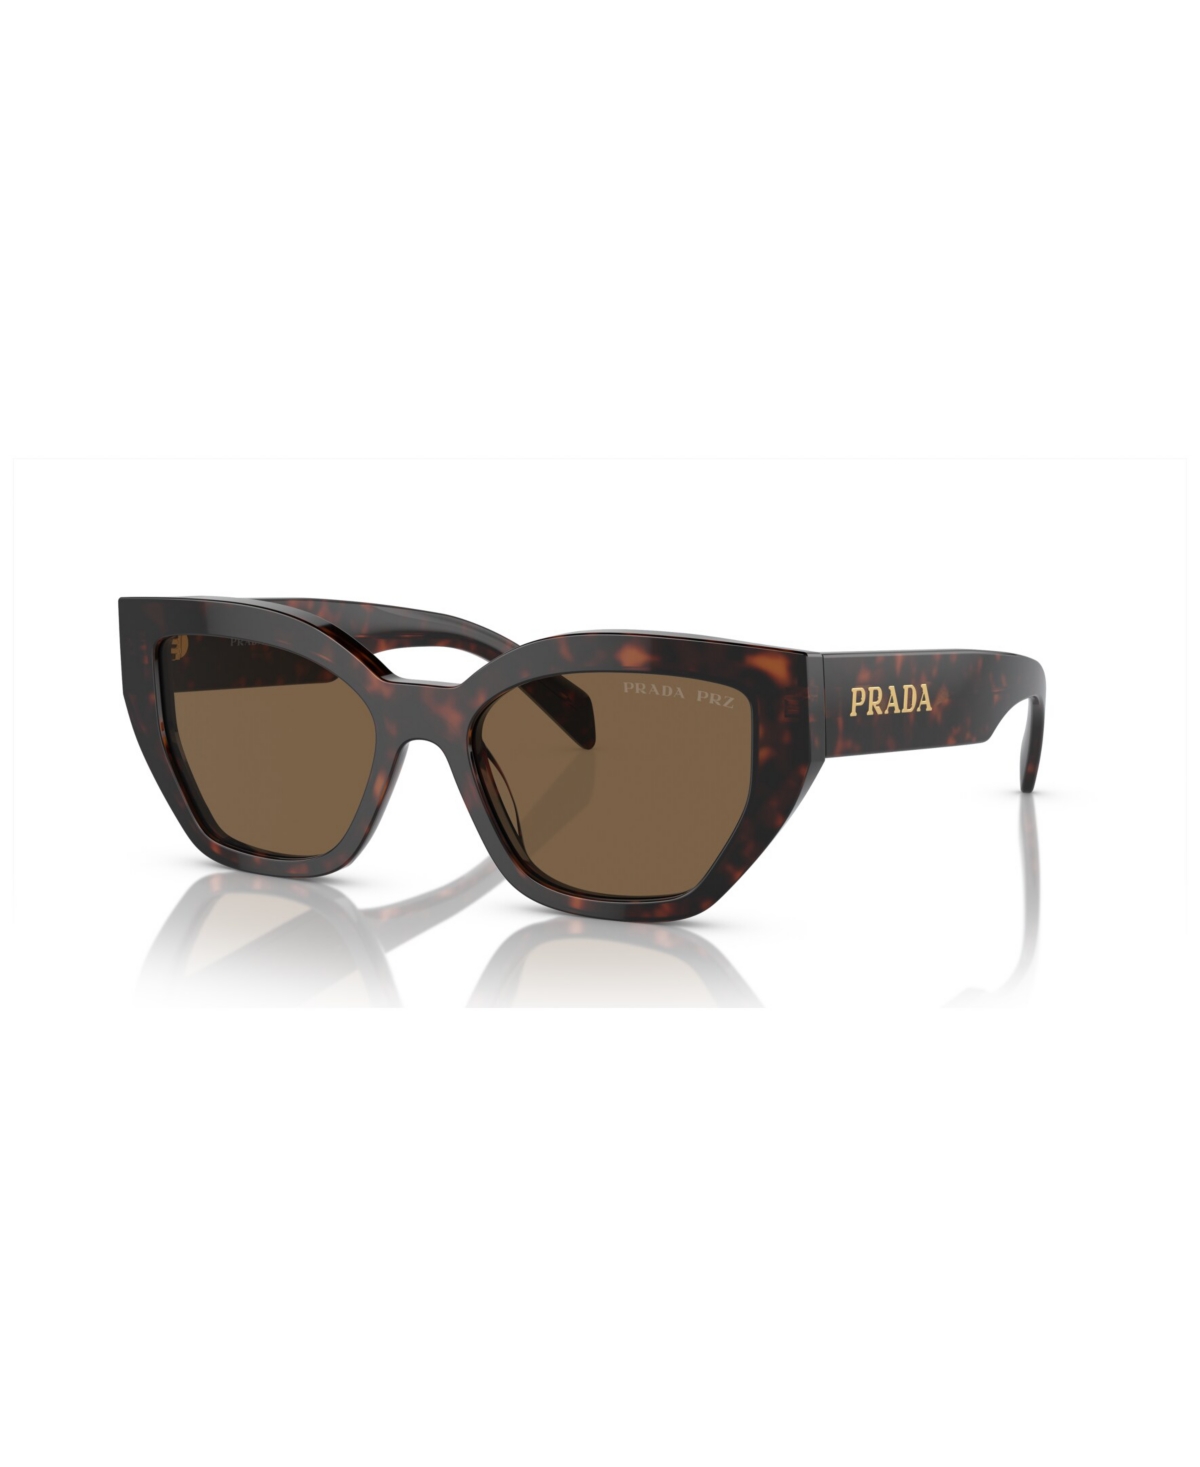 Prada Women's Sunglasses Pr A09s In Briar Tortoise